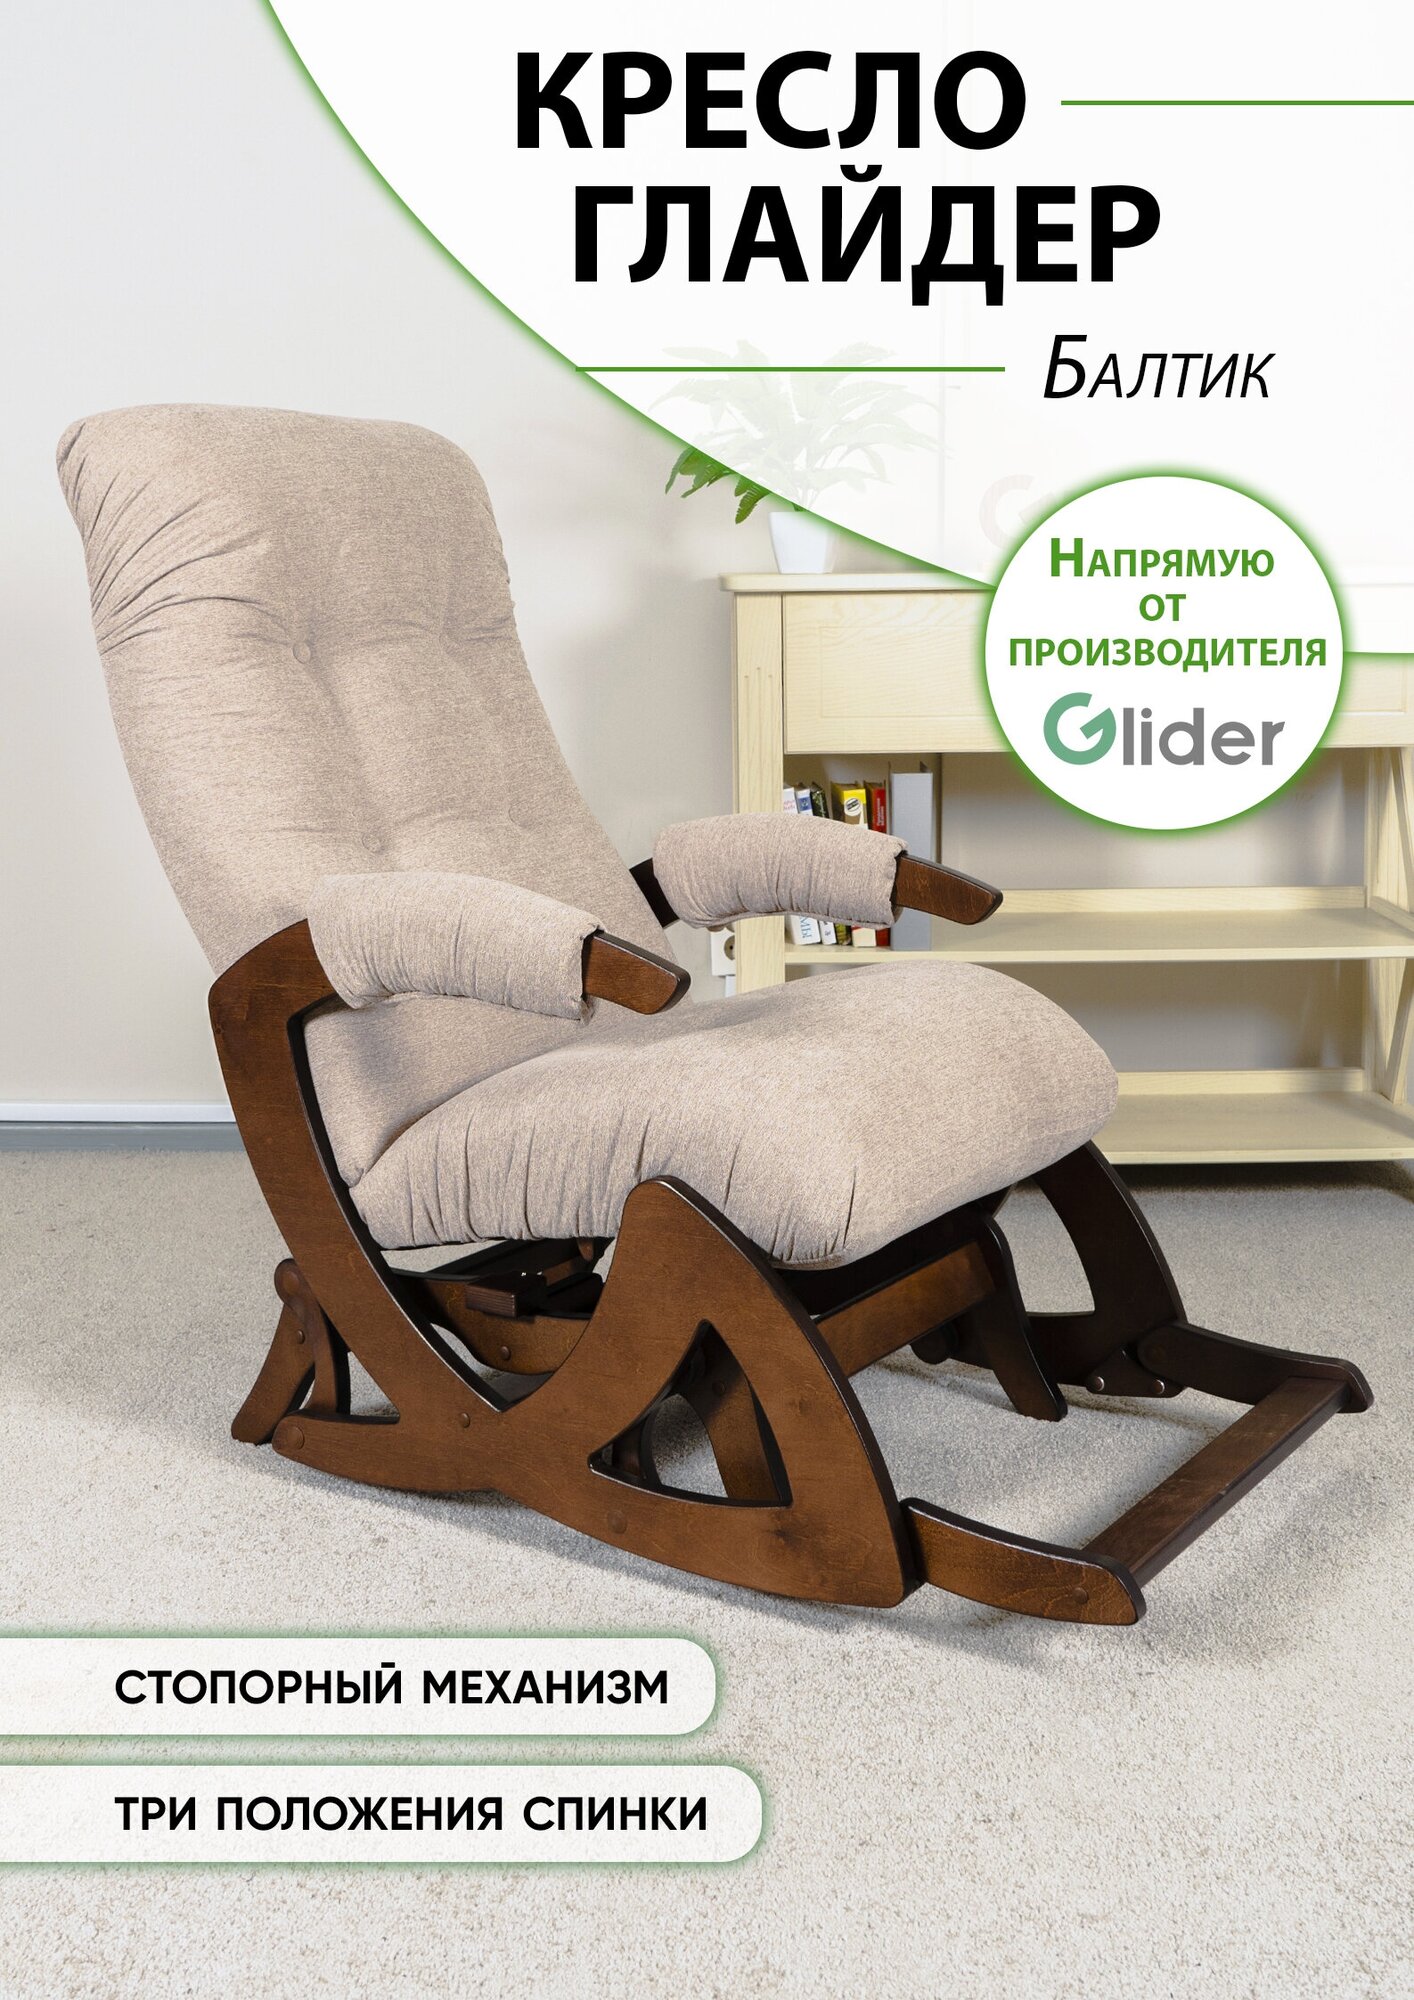 Кресло качалка маятник Балтик Tailor3 орех антик — купить в интернет-магазине по низкой цене на Яндекс Маркете